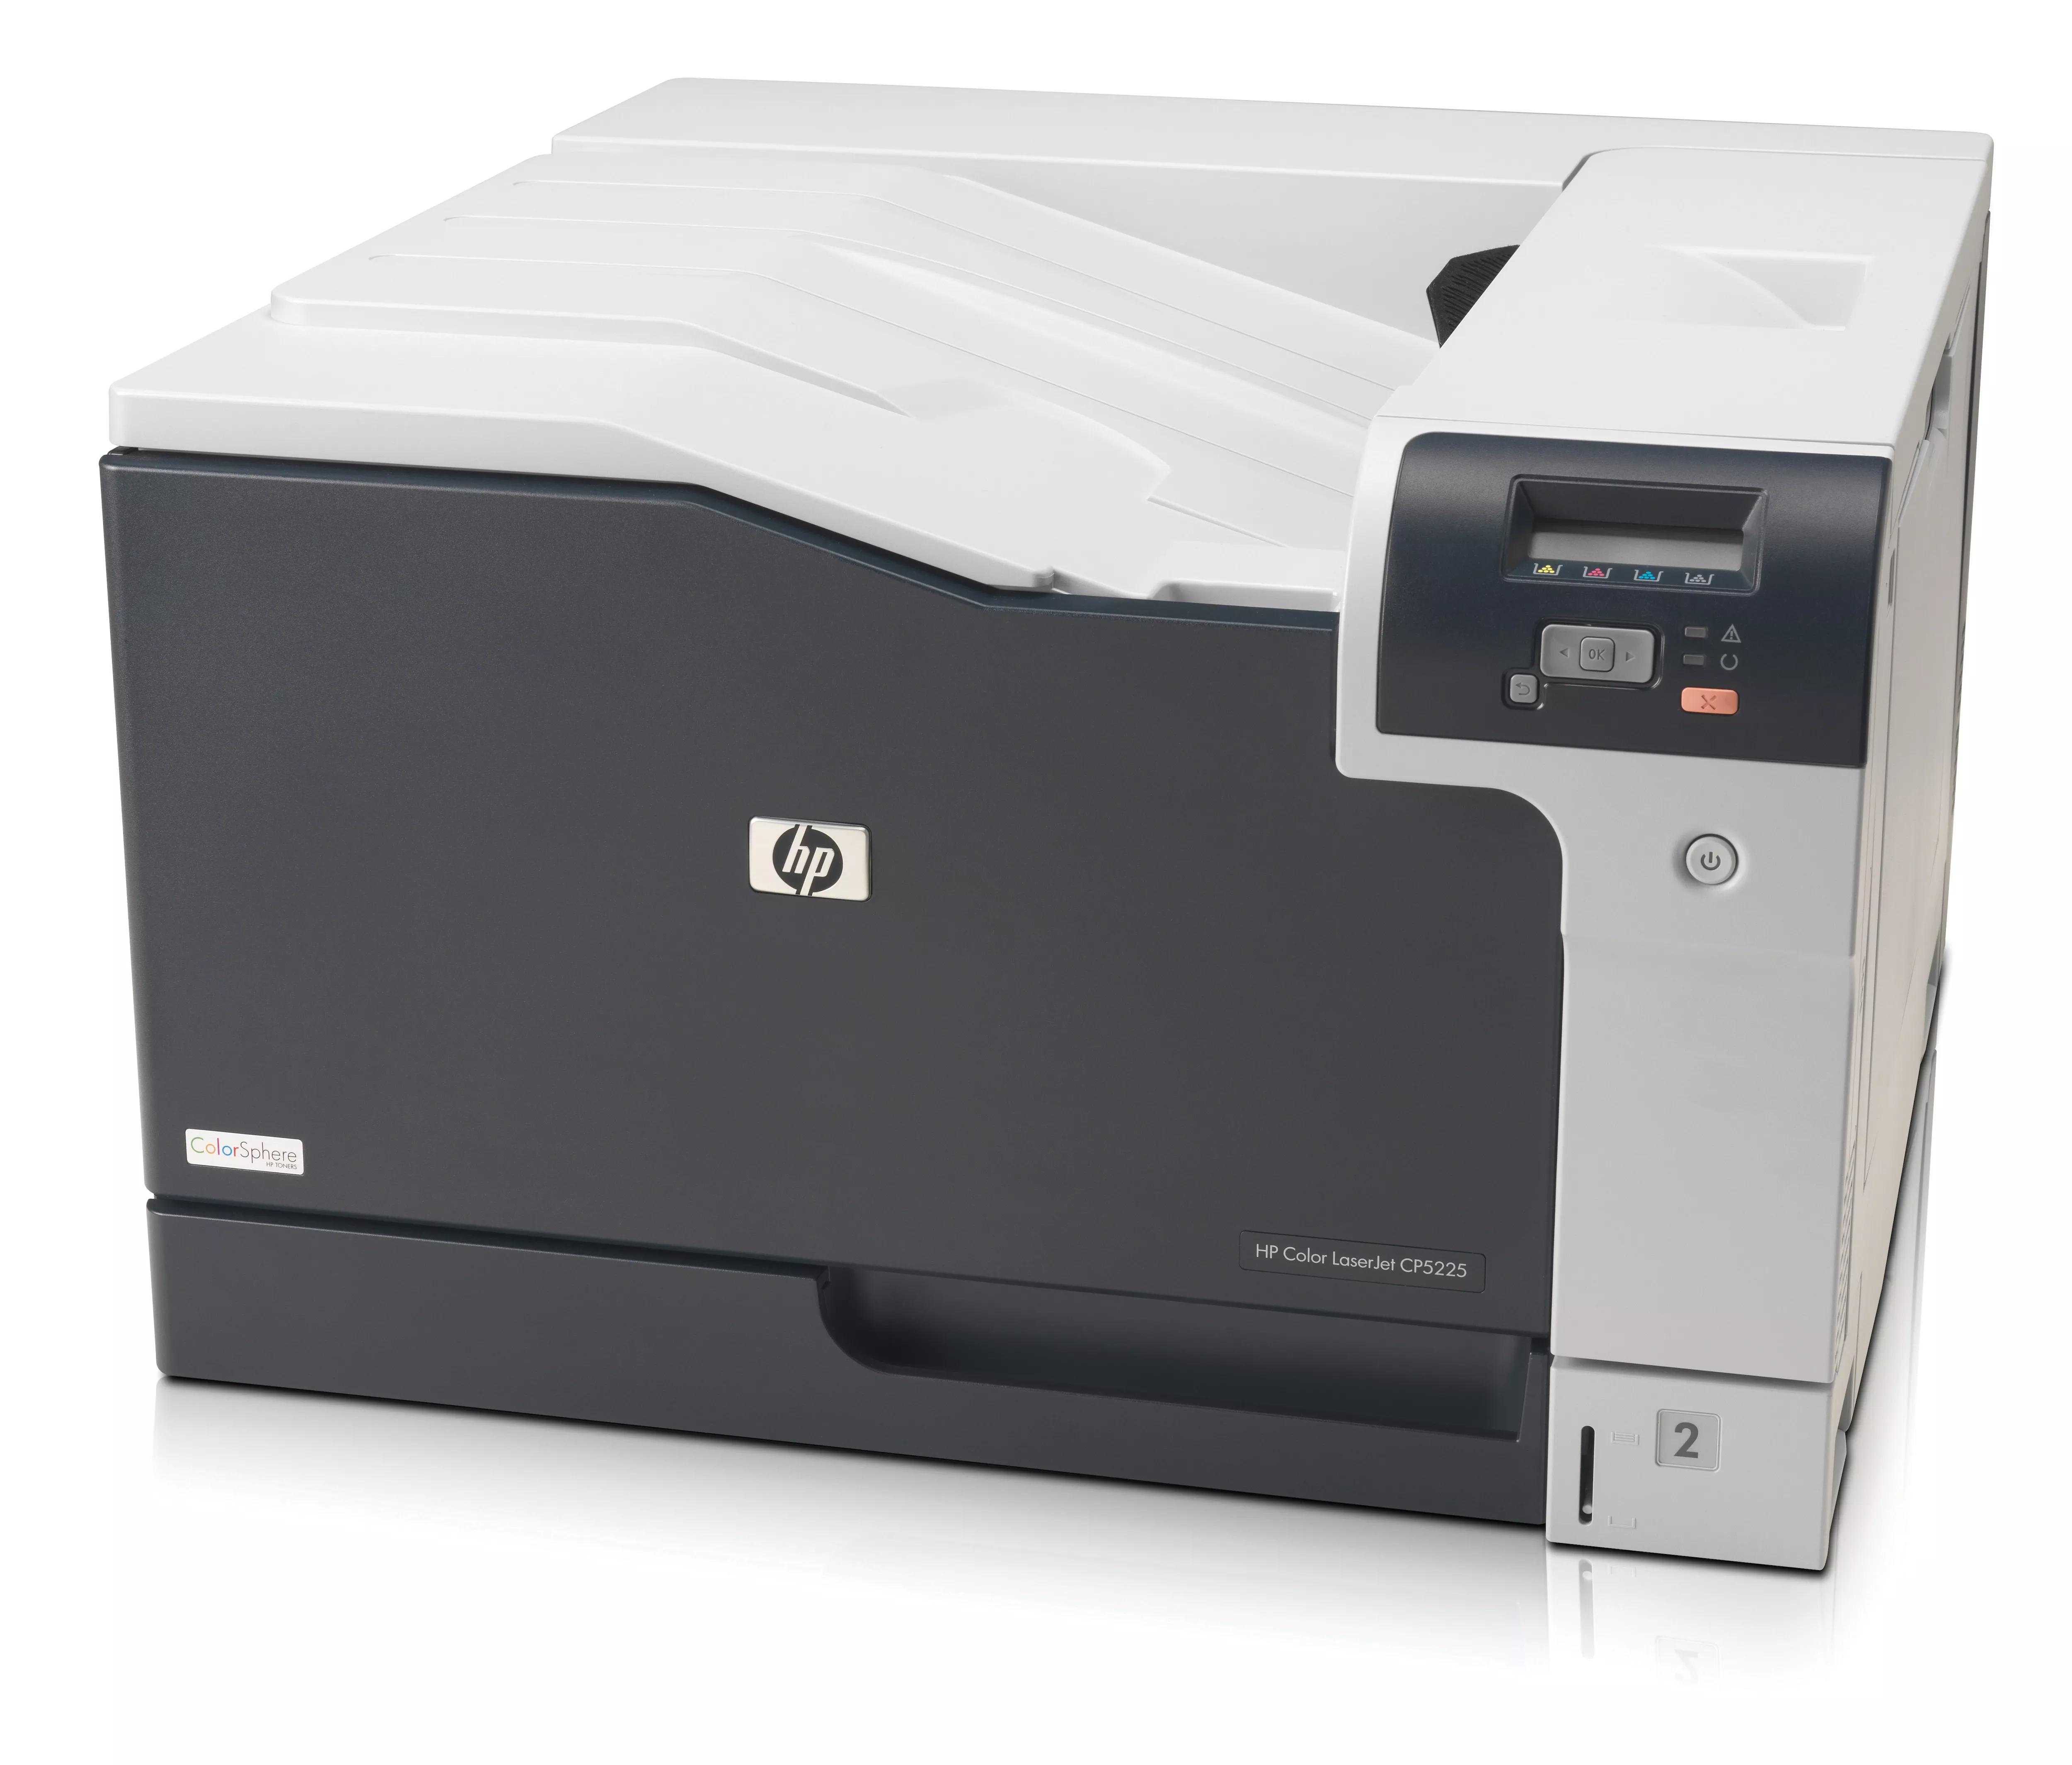 Achat HP Color LaserJet CP5225 sur hello RSE - visuel 3